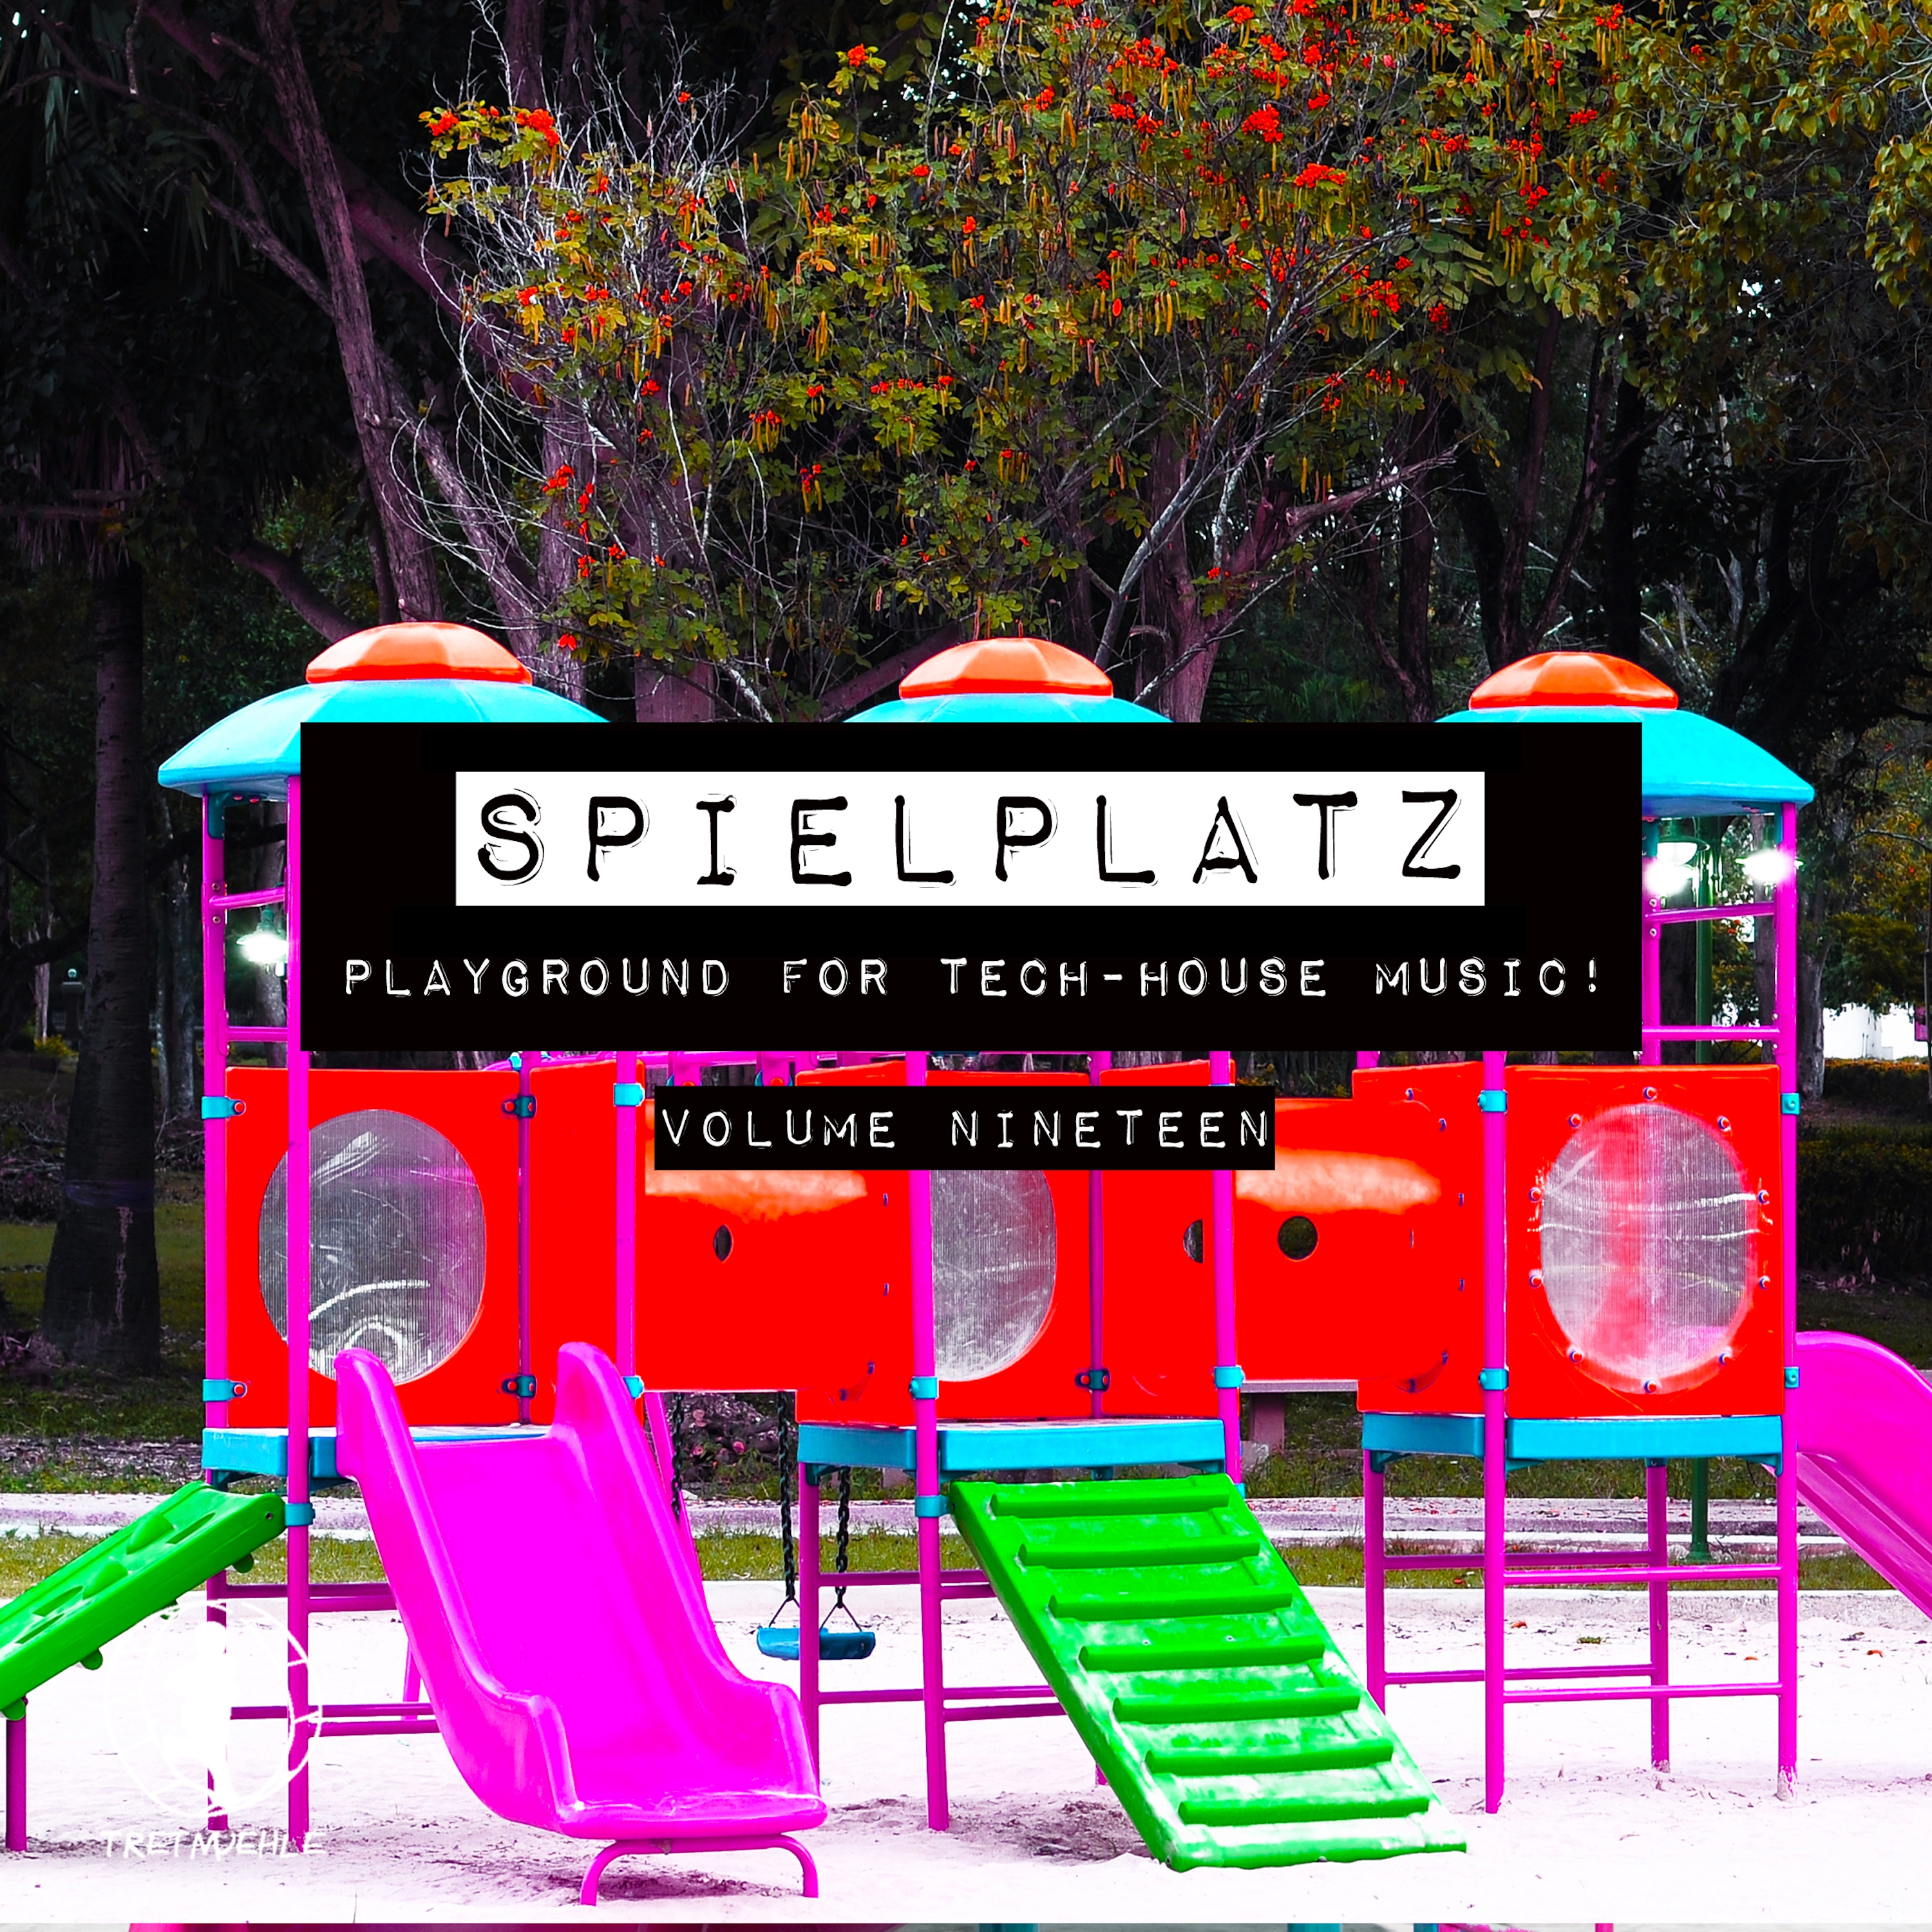 Spielplatz, Vol. 19 - Playground for Tech-House Music